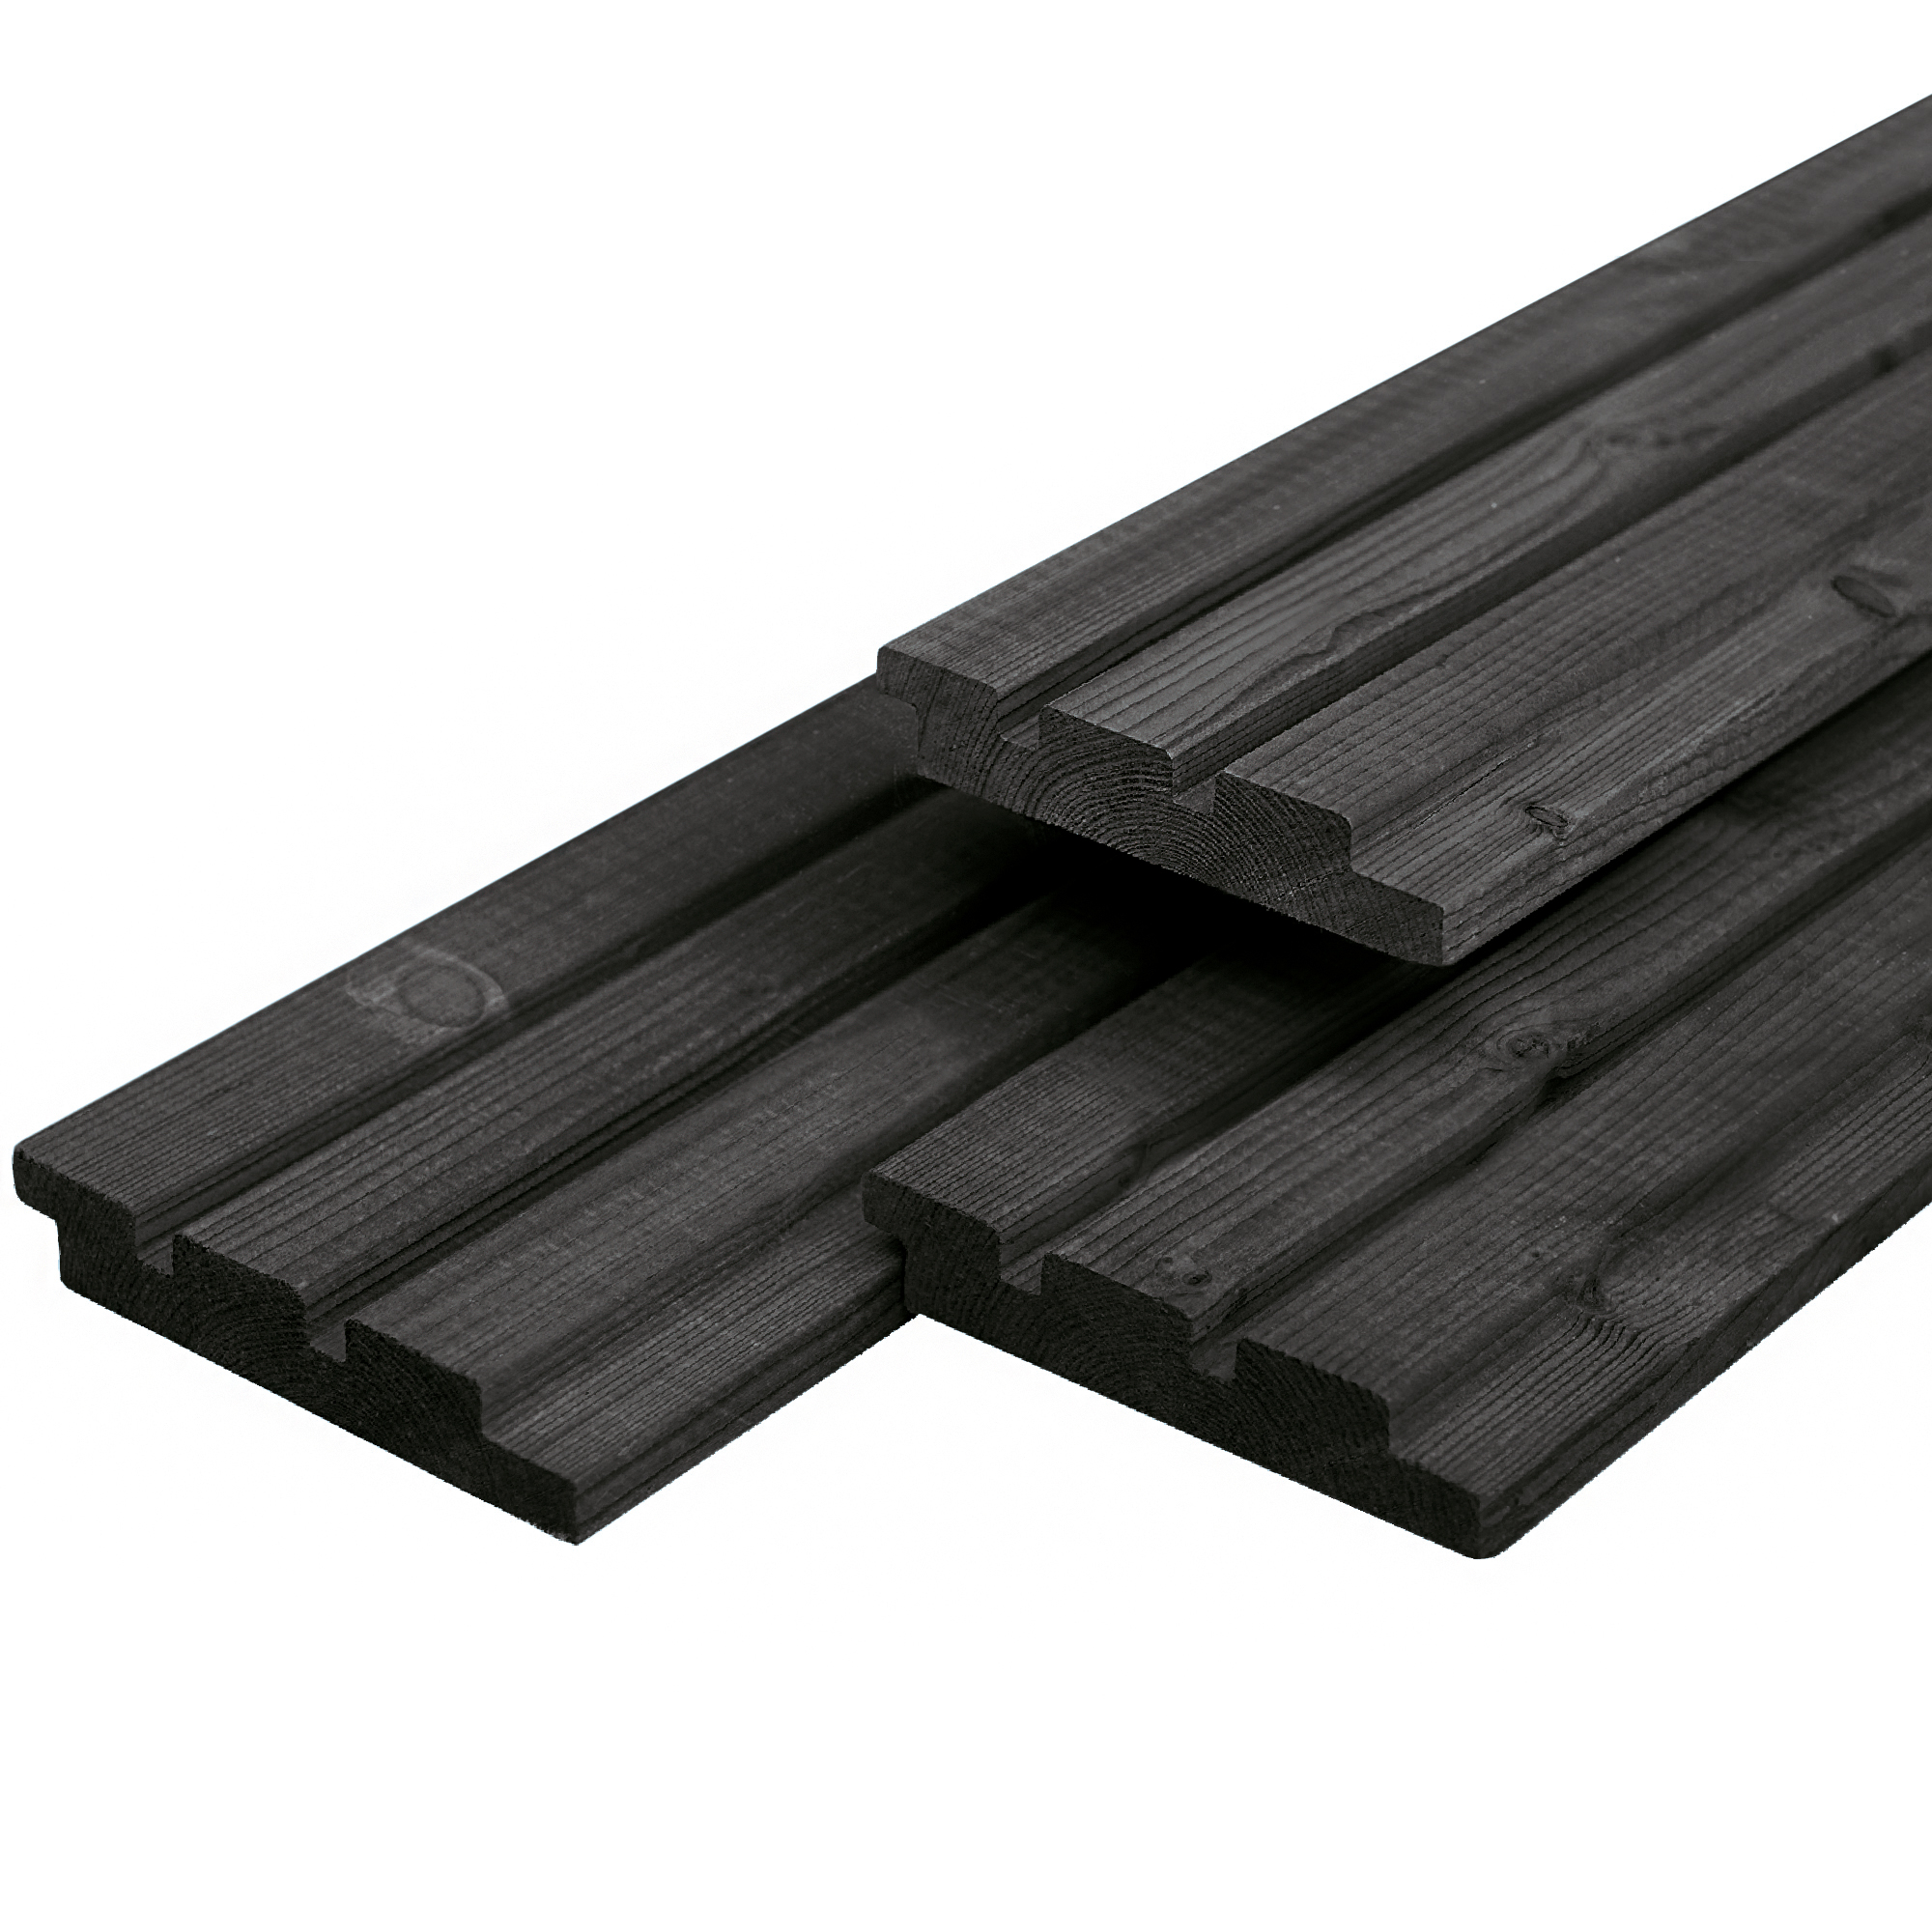 Dreifach-Profilholz aus Douglasie schwarz gespritzt 1.9x13.0x245cm